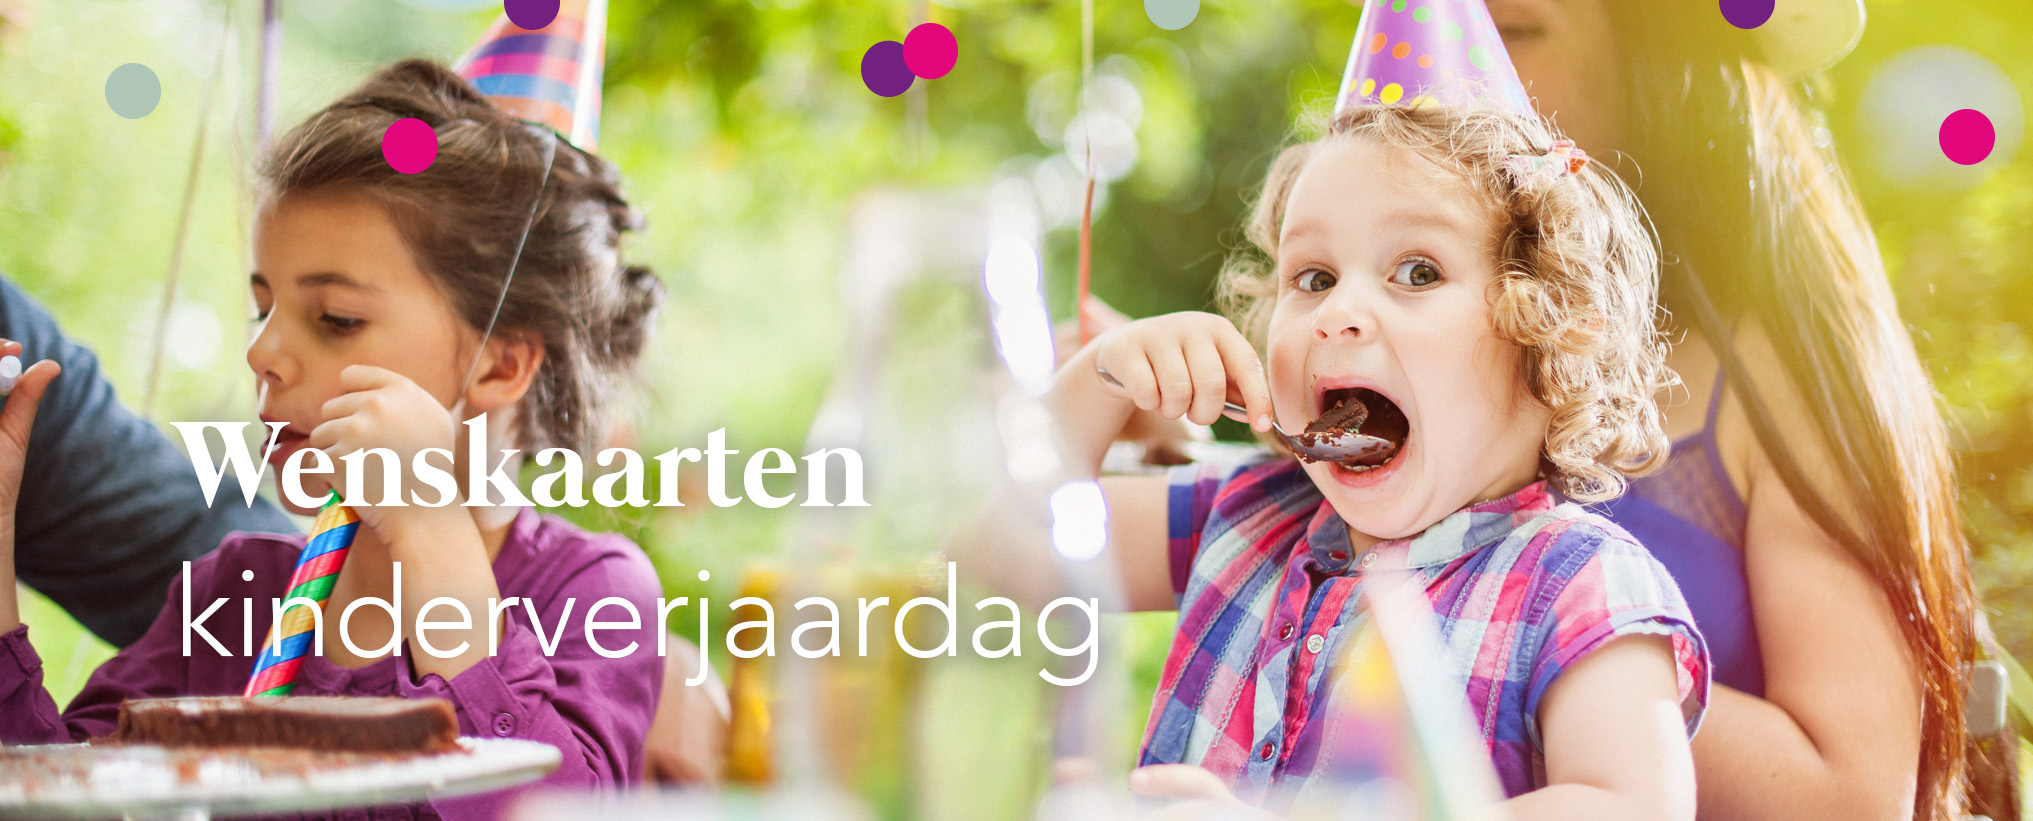 Geheim beroemd spreken Wenskaarten voor een kinderverjaardag | Blijkaartje